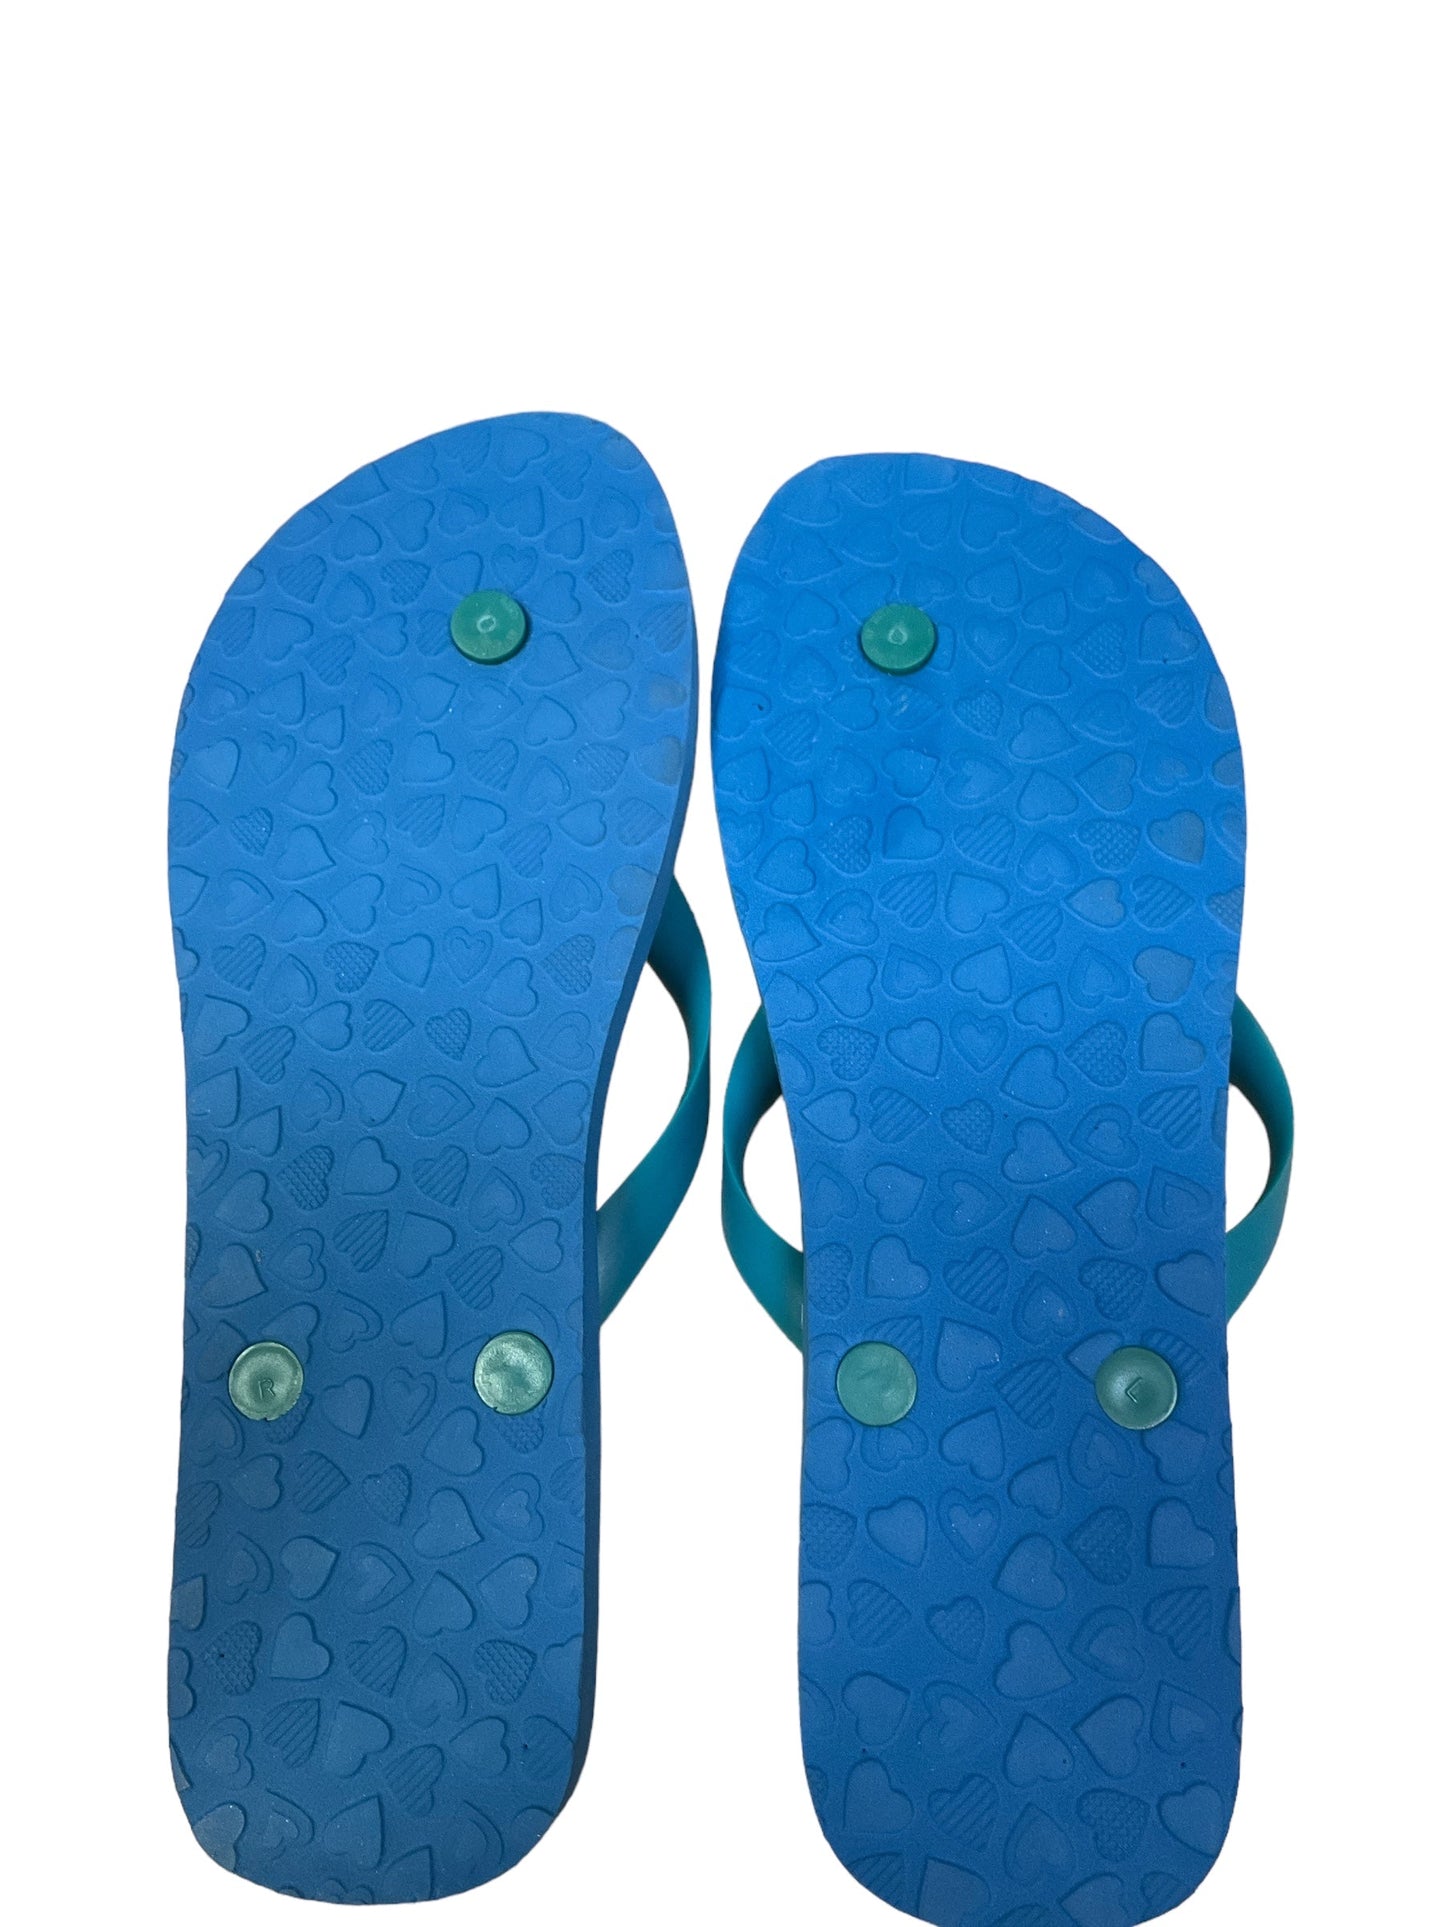 Blue Sandals Flip Flops Brighton, Size 9